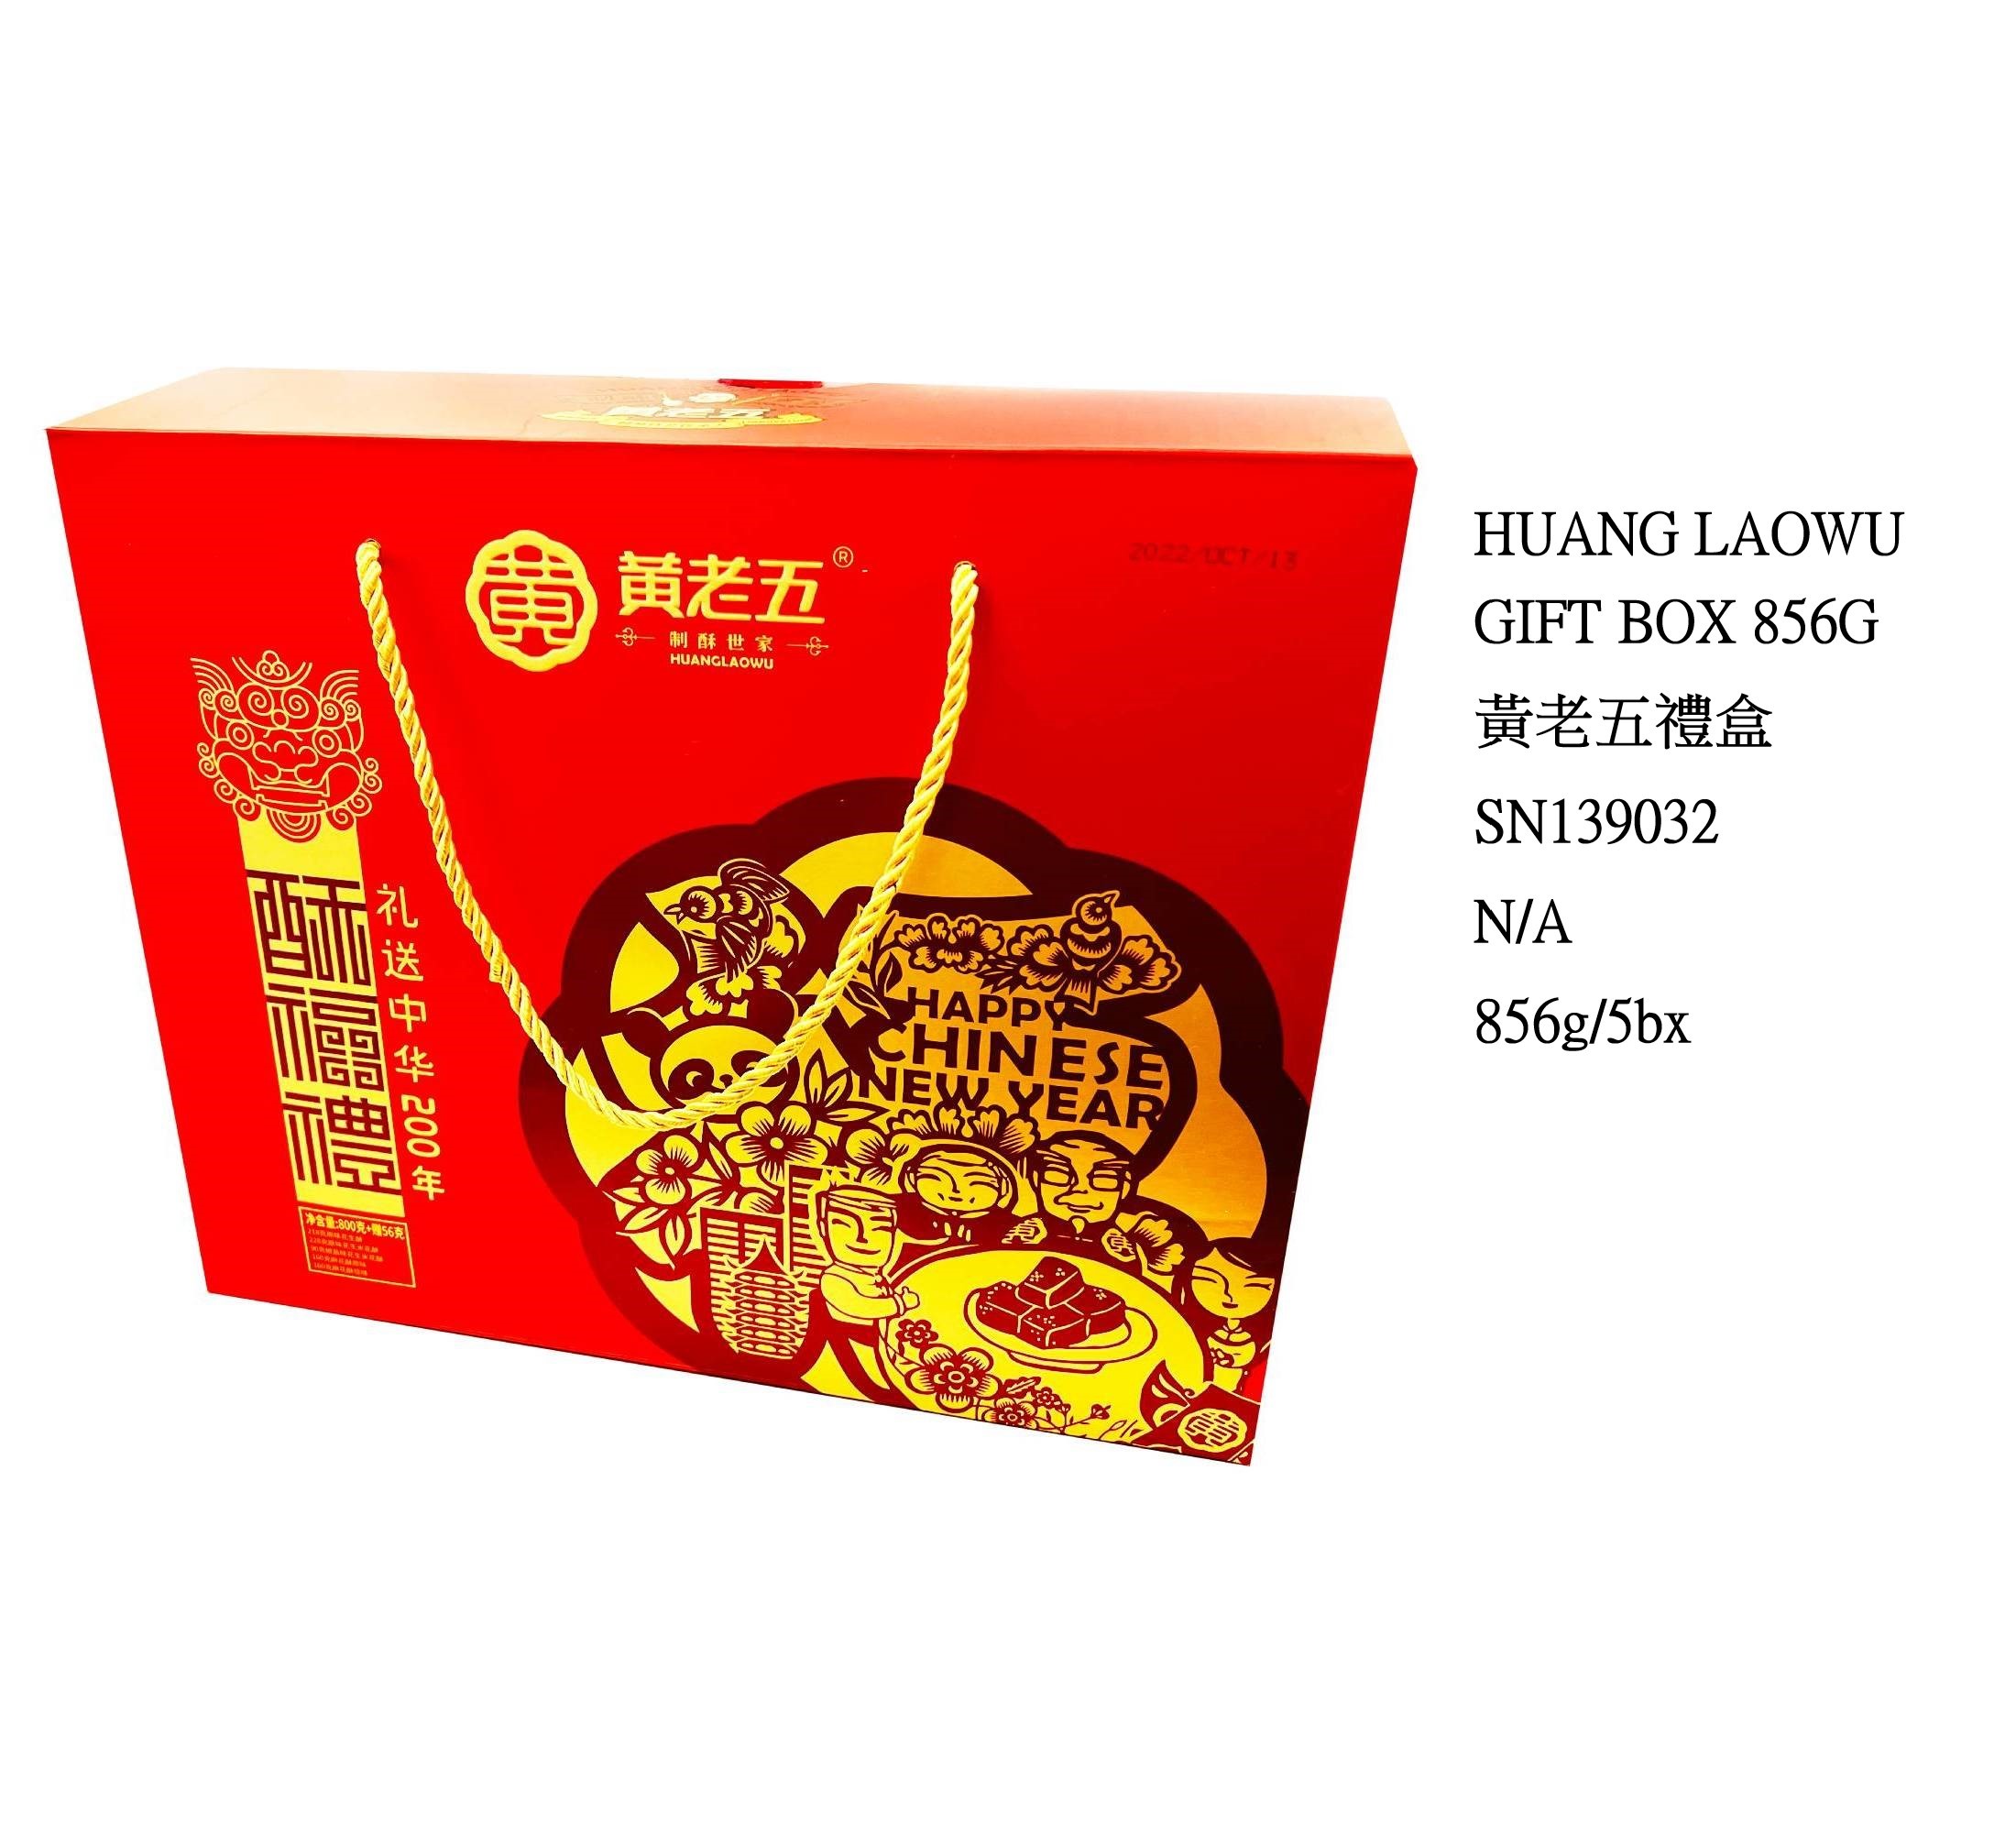 HUANG LAOWU GIFT BOX (856G) SN139032